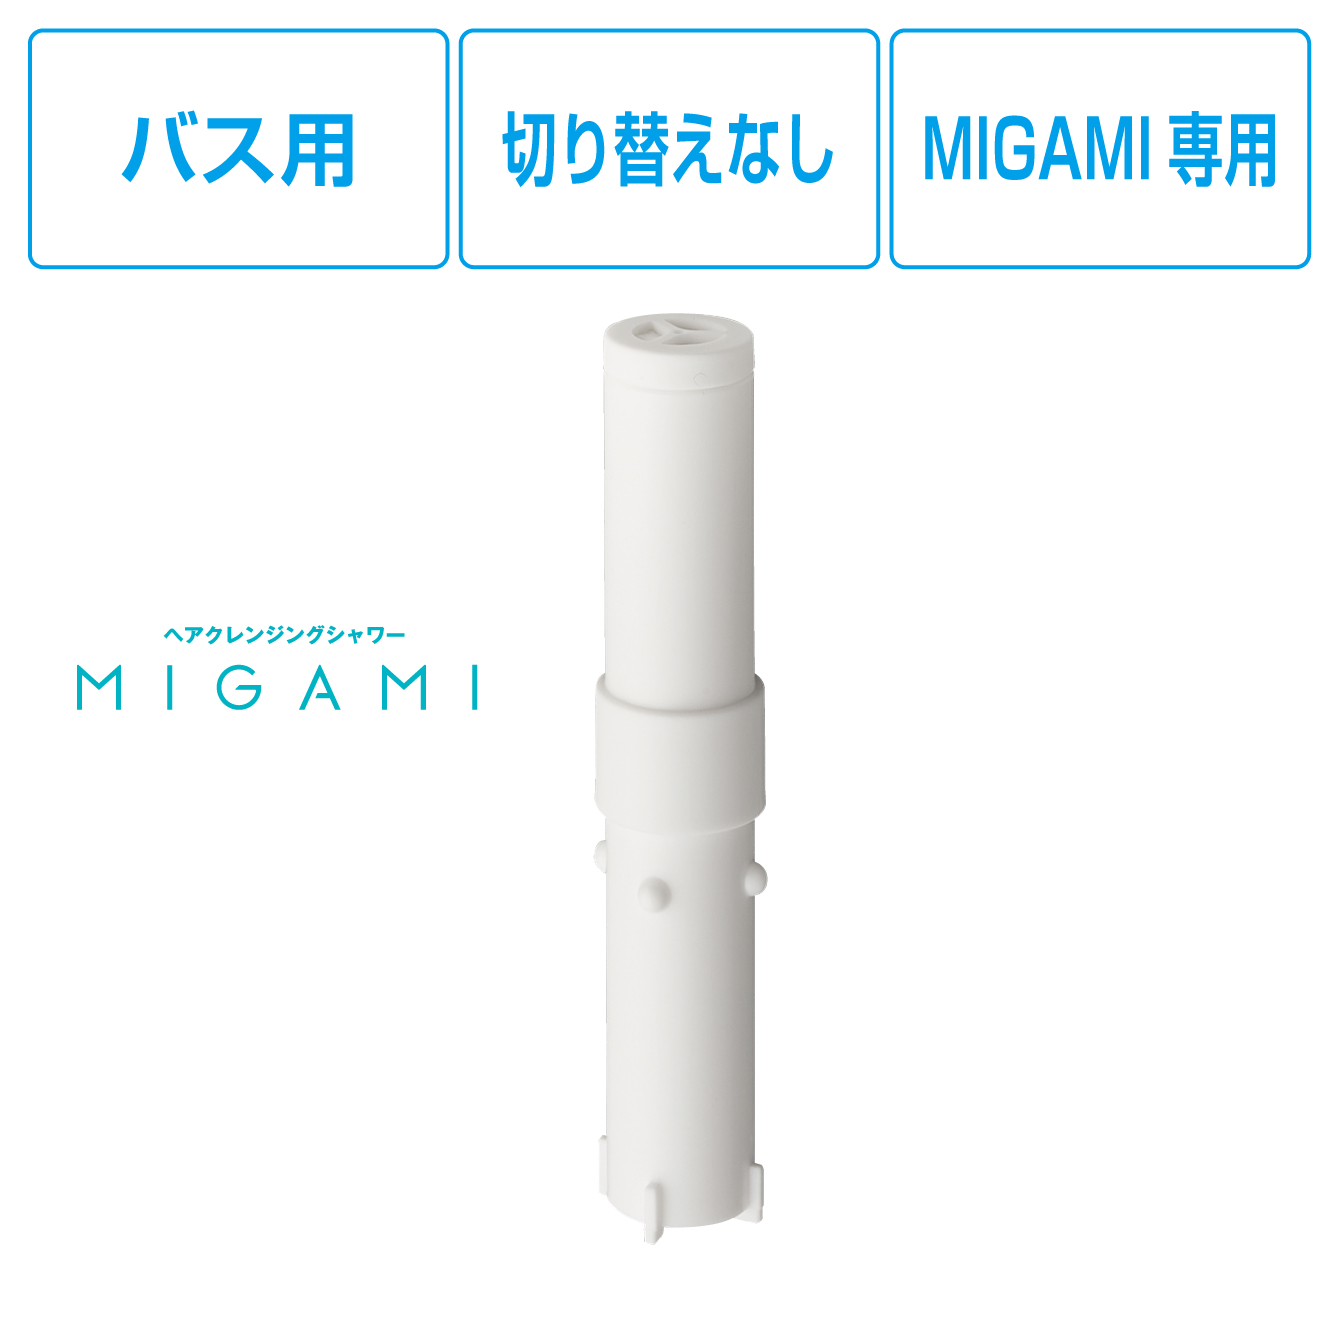 MIGAMI専用浄水カートリッジ